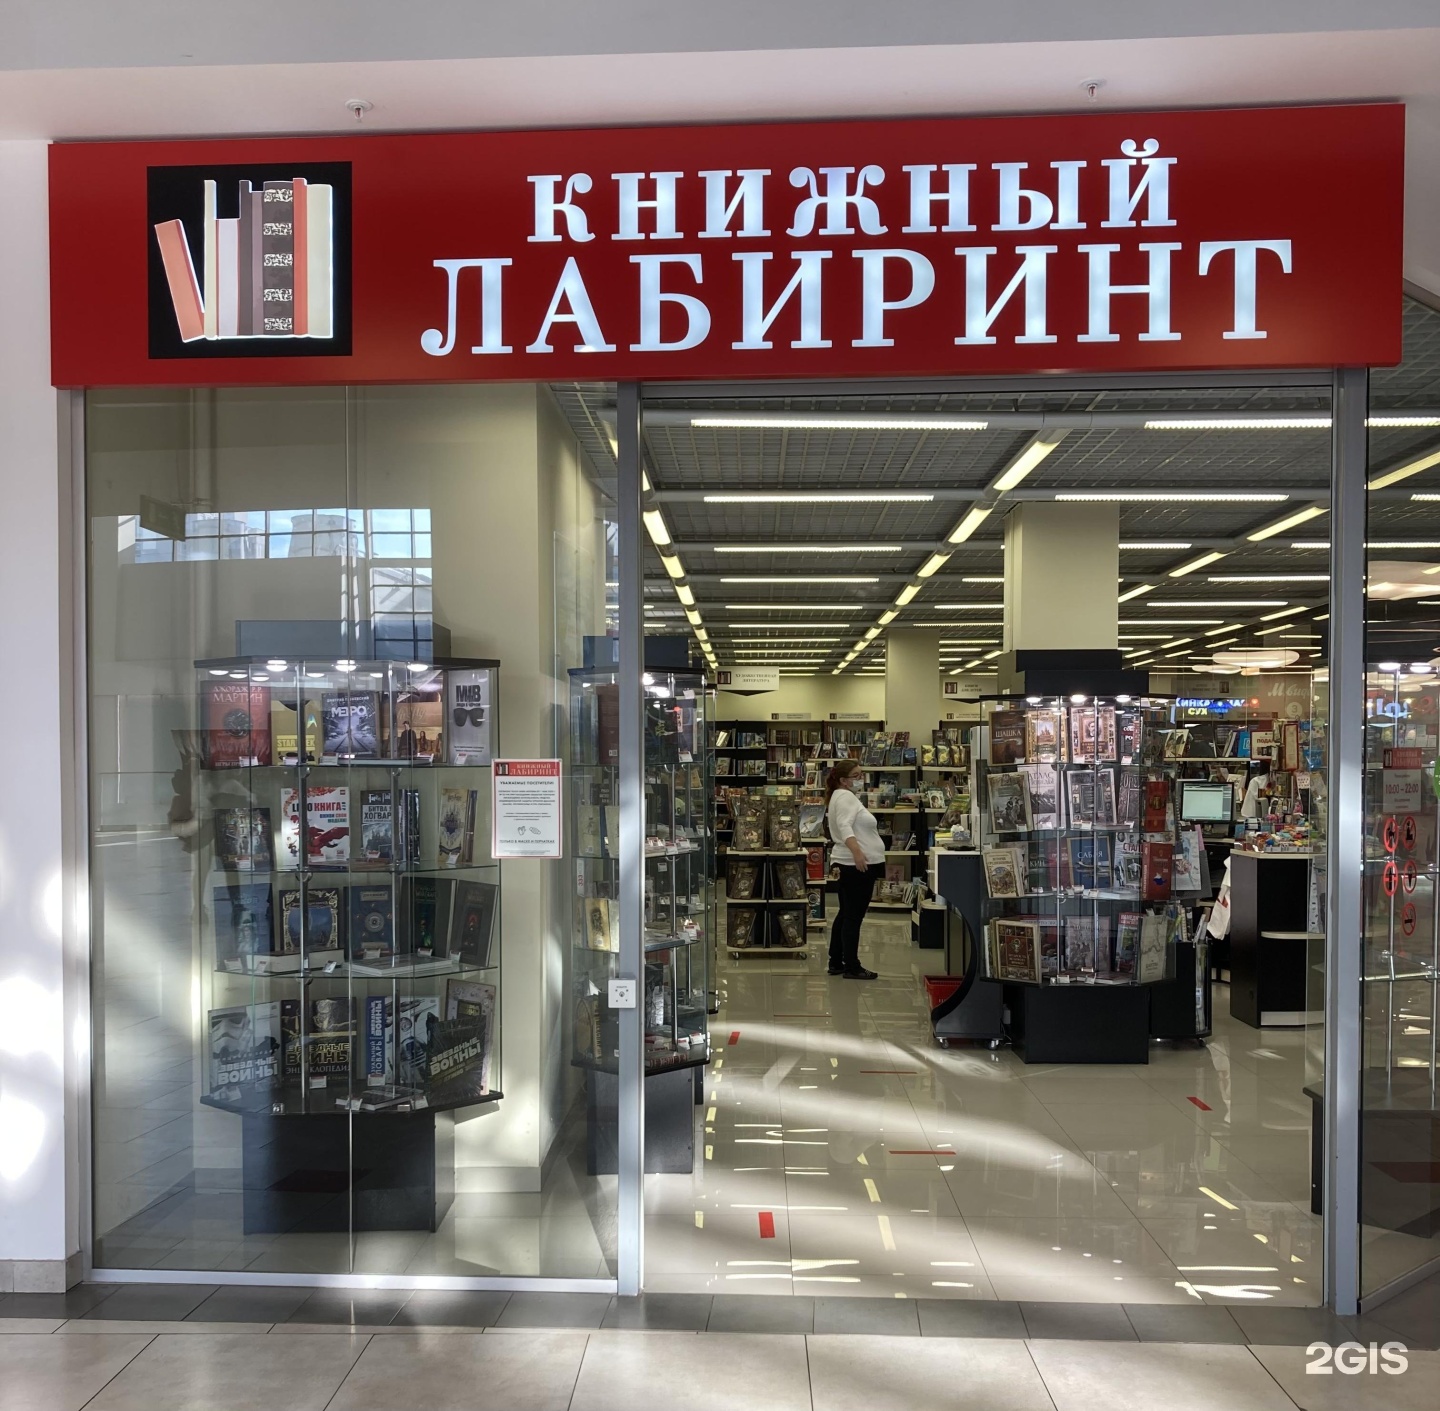 Лабиринт магазин книг. ТРК Мари Поречная 10.